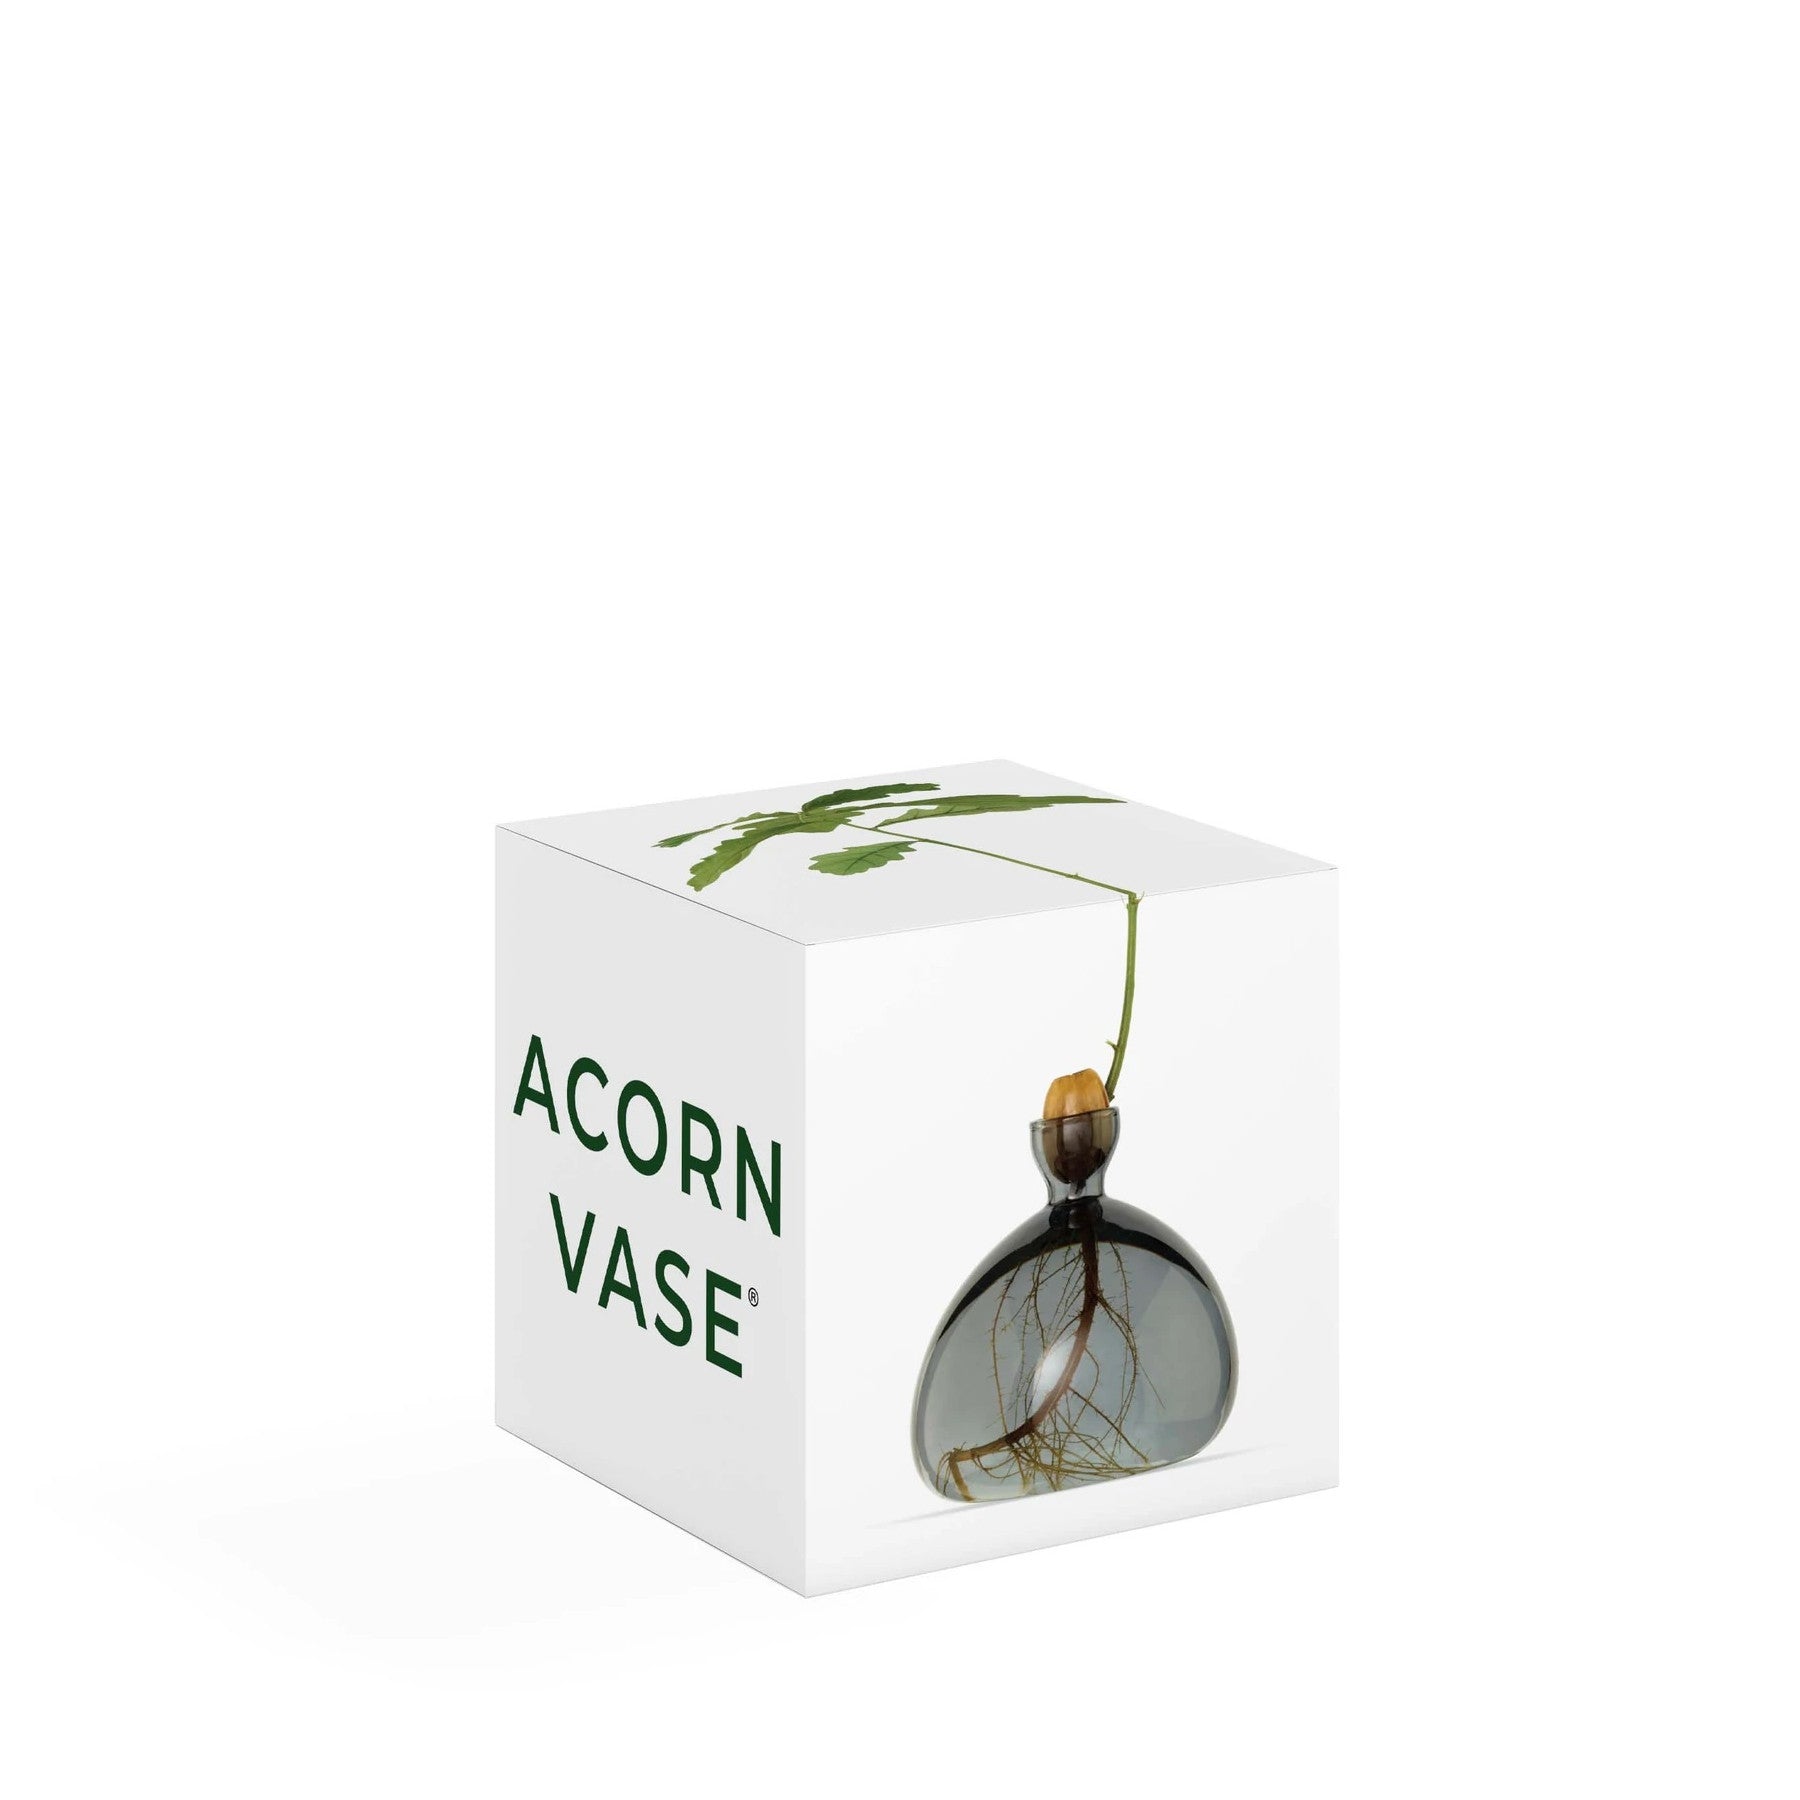 Acorn vase smoke grey